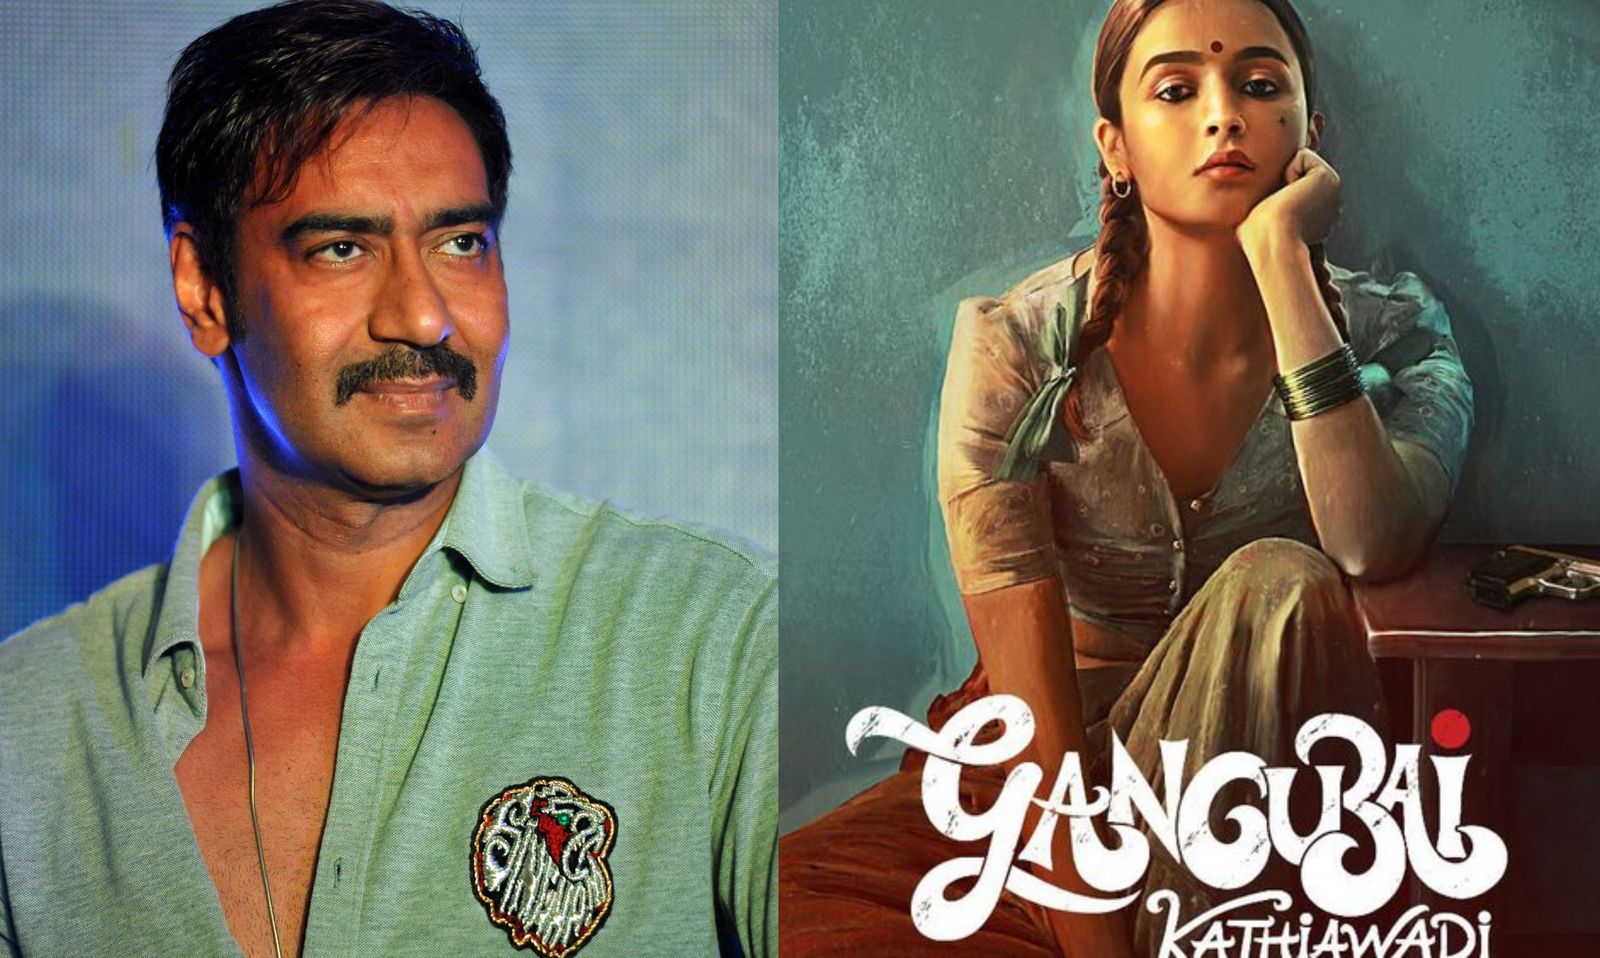 अजय देवगन ने आज से शुरू की आलिया भट्ट स्टारर 'गंगूबाई काठियावाड़ी' की शूटिंग 